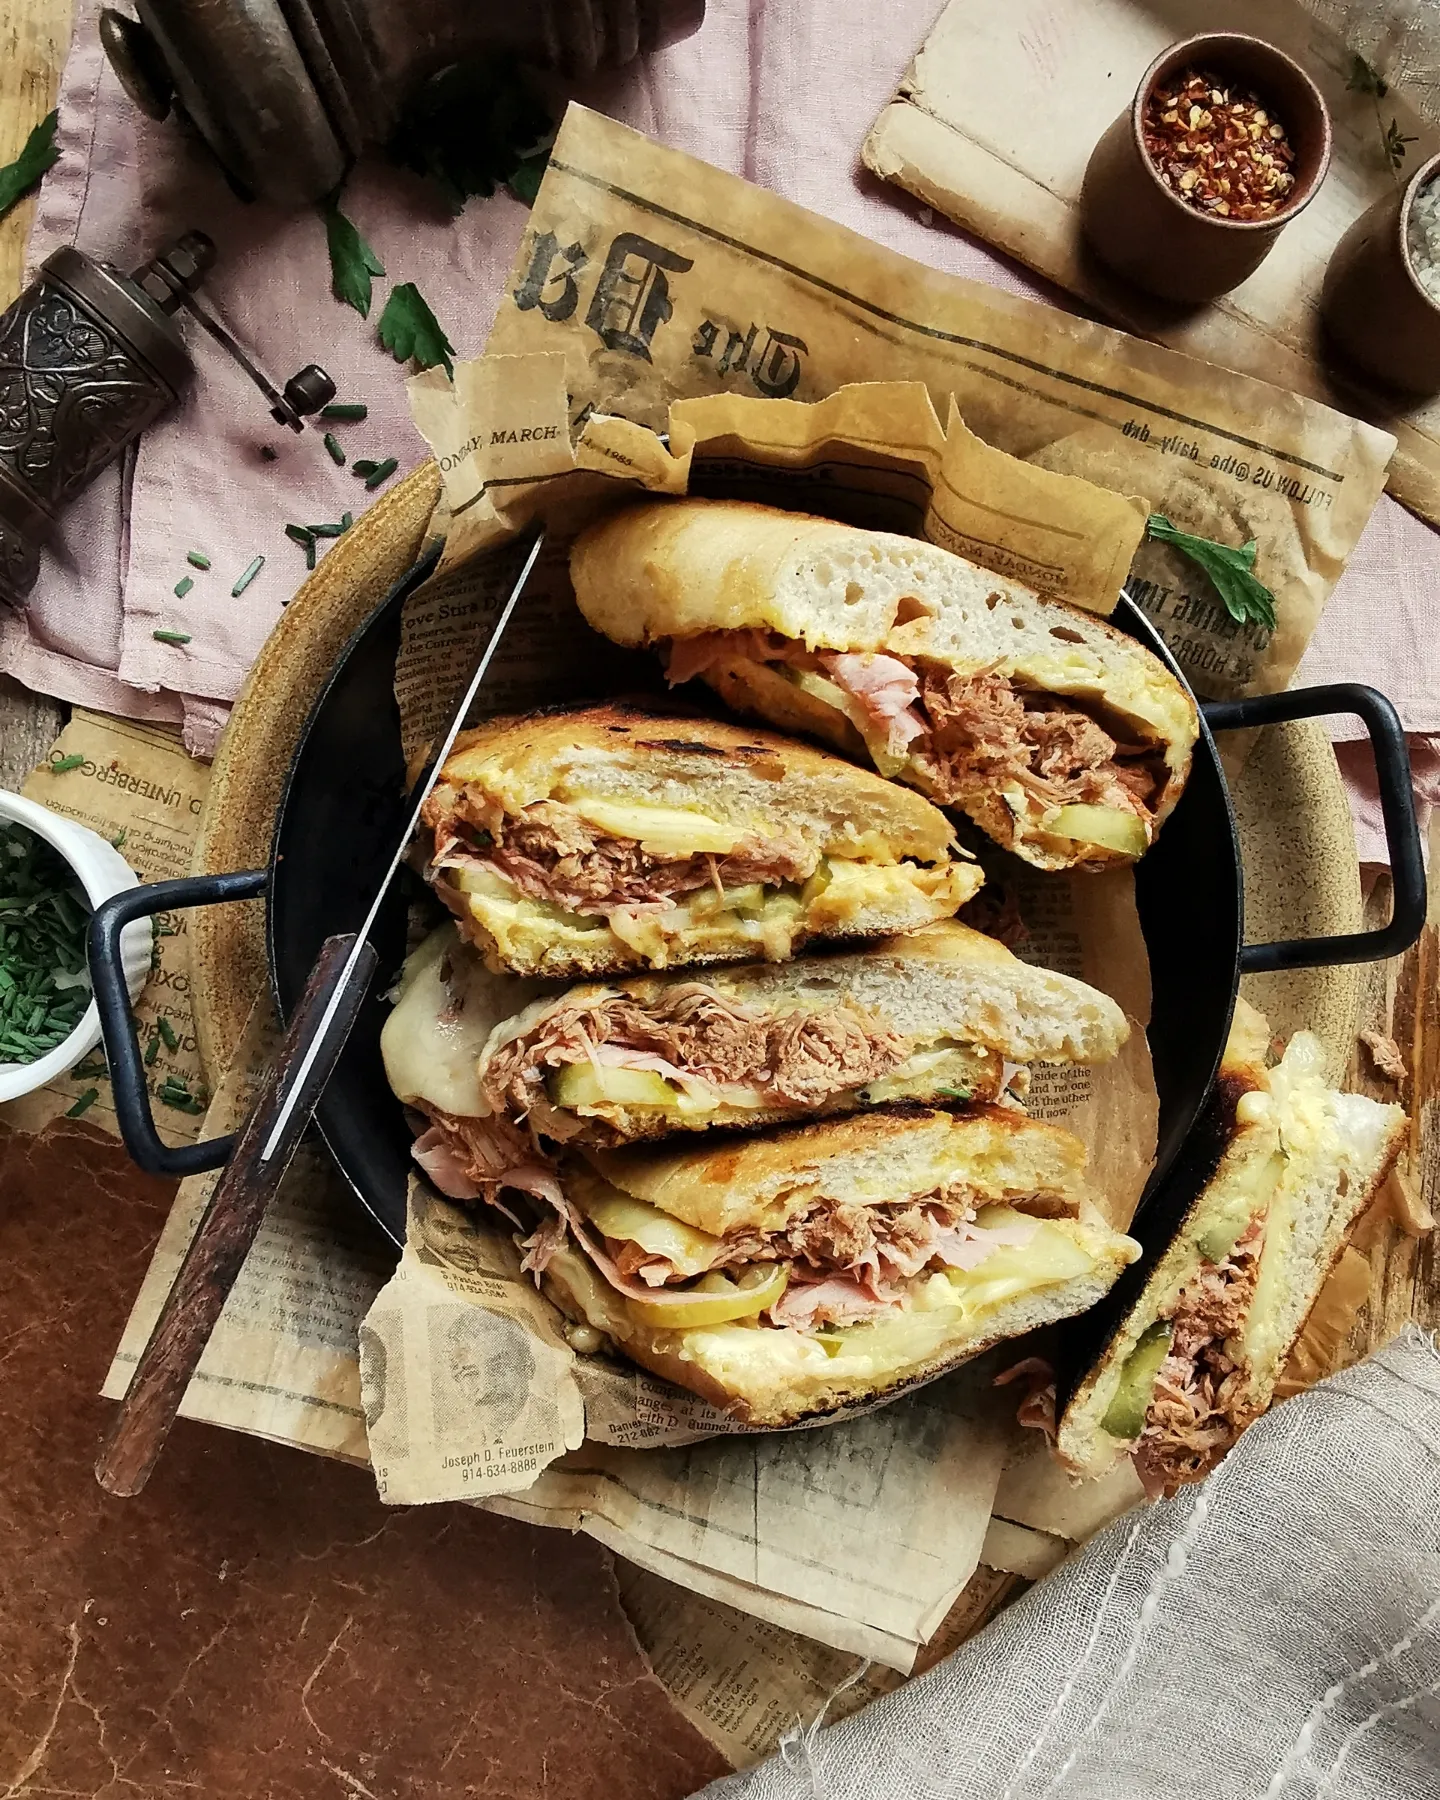 Cuban sandwich (Cubano)